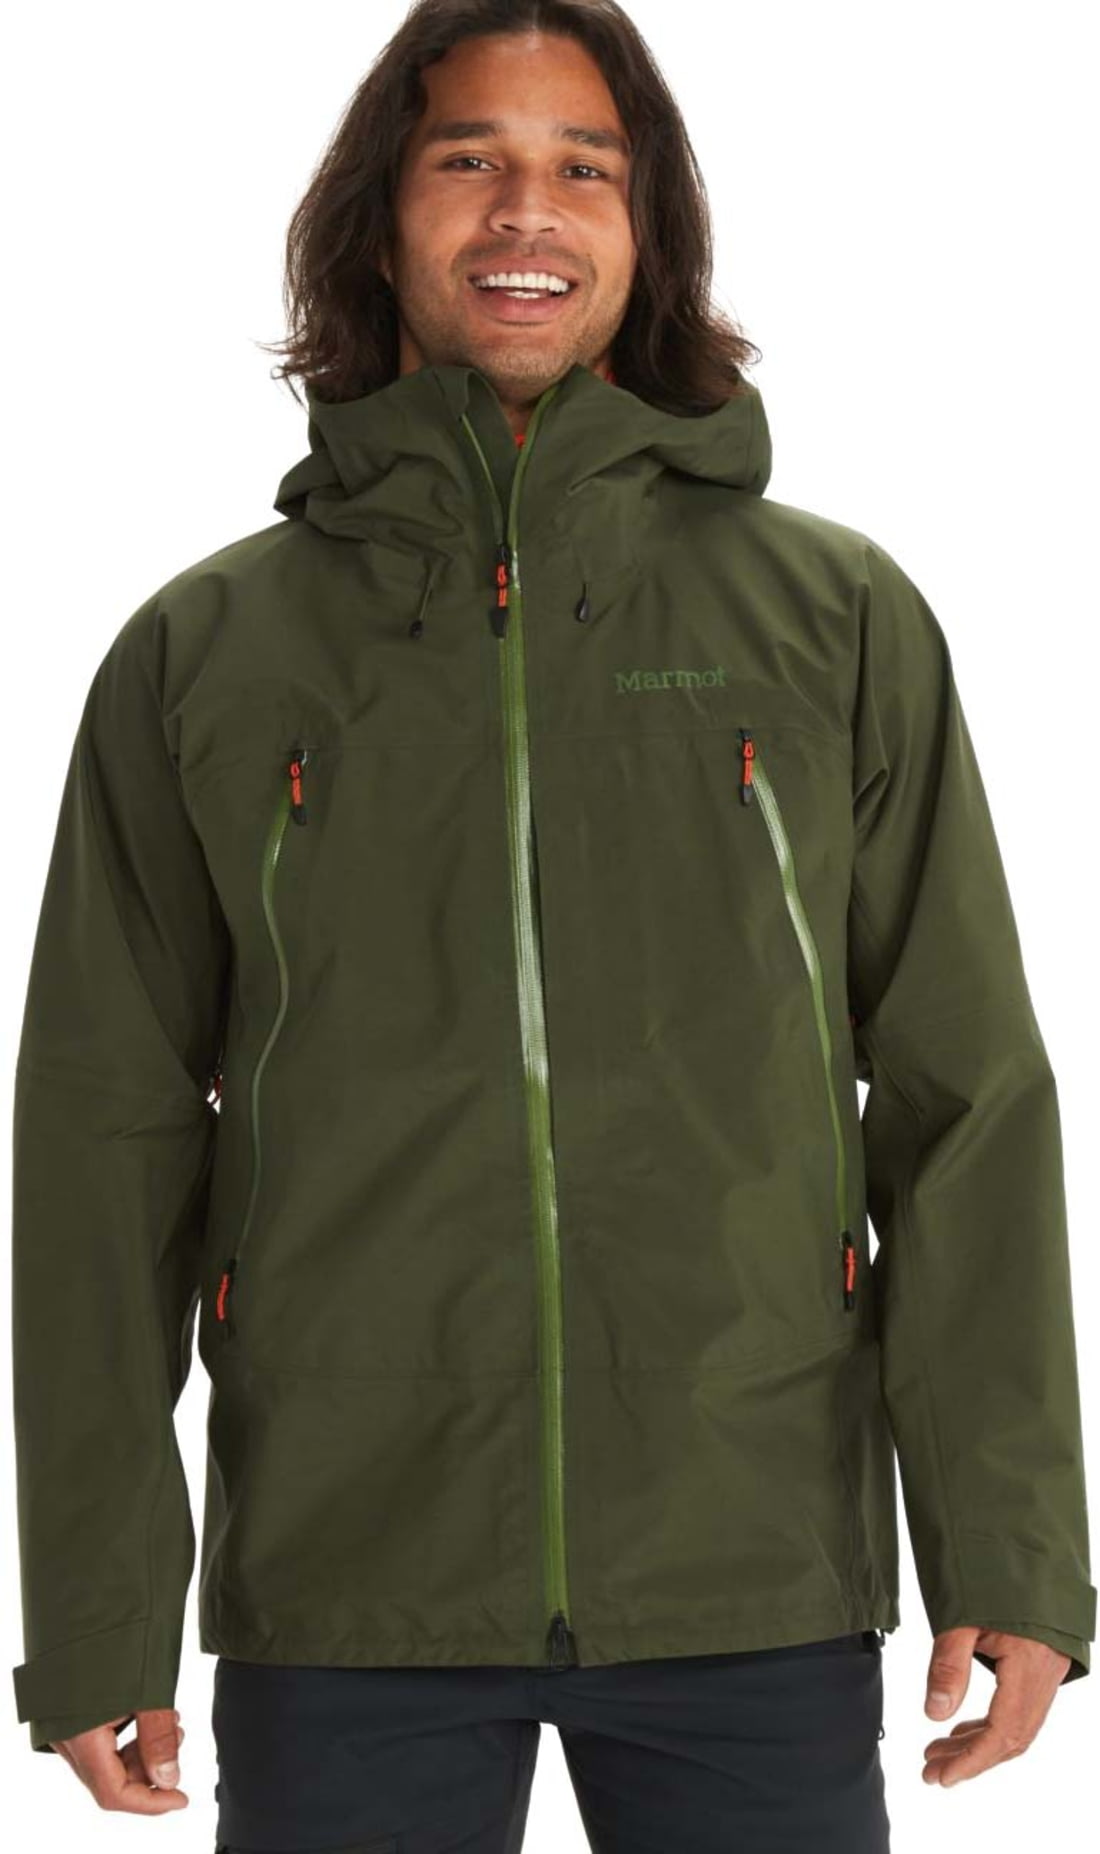 Marmot Alpinist GORE-TEX Jacket - Men's, Nori, Medium, — Mens Clothing ...